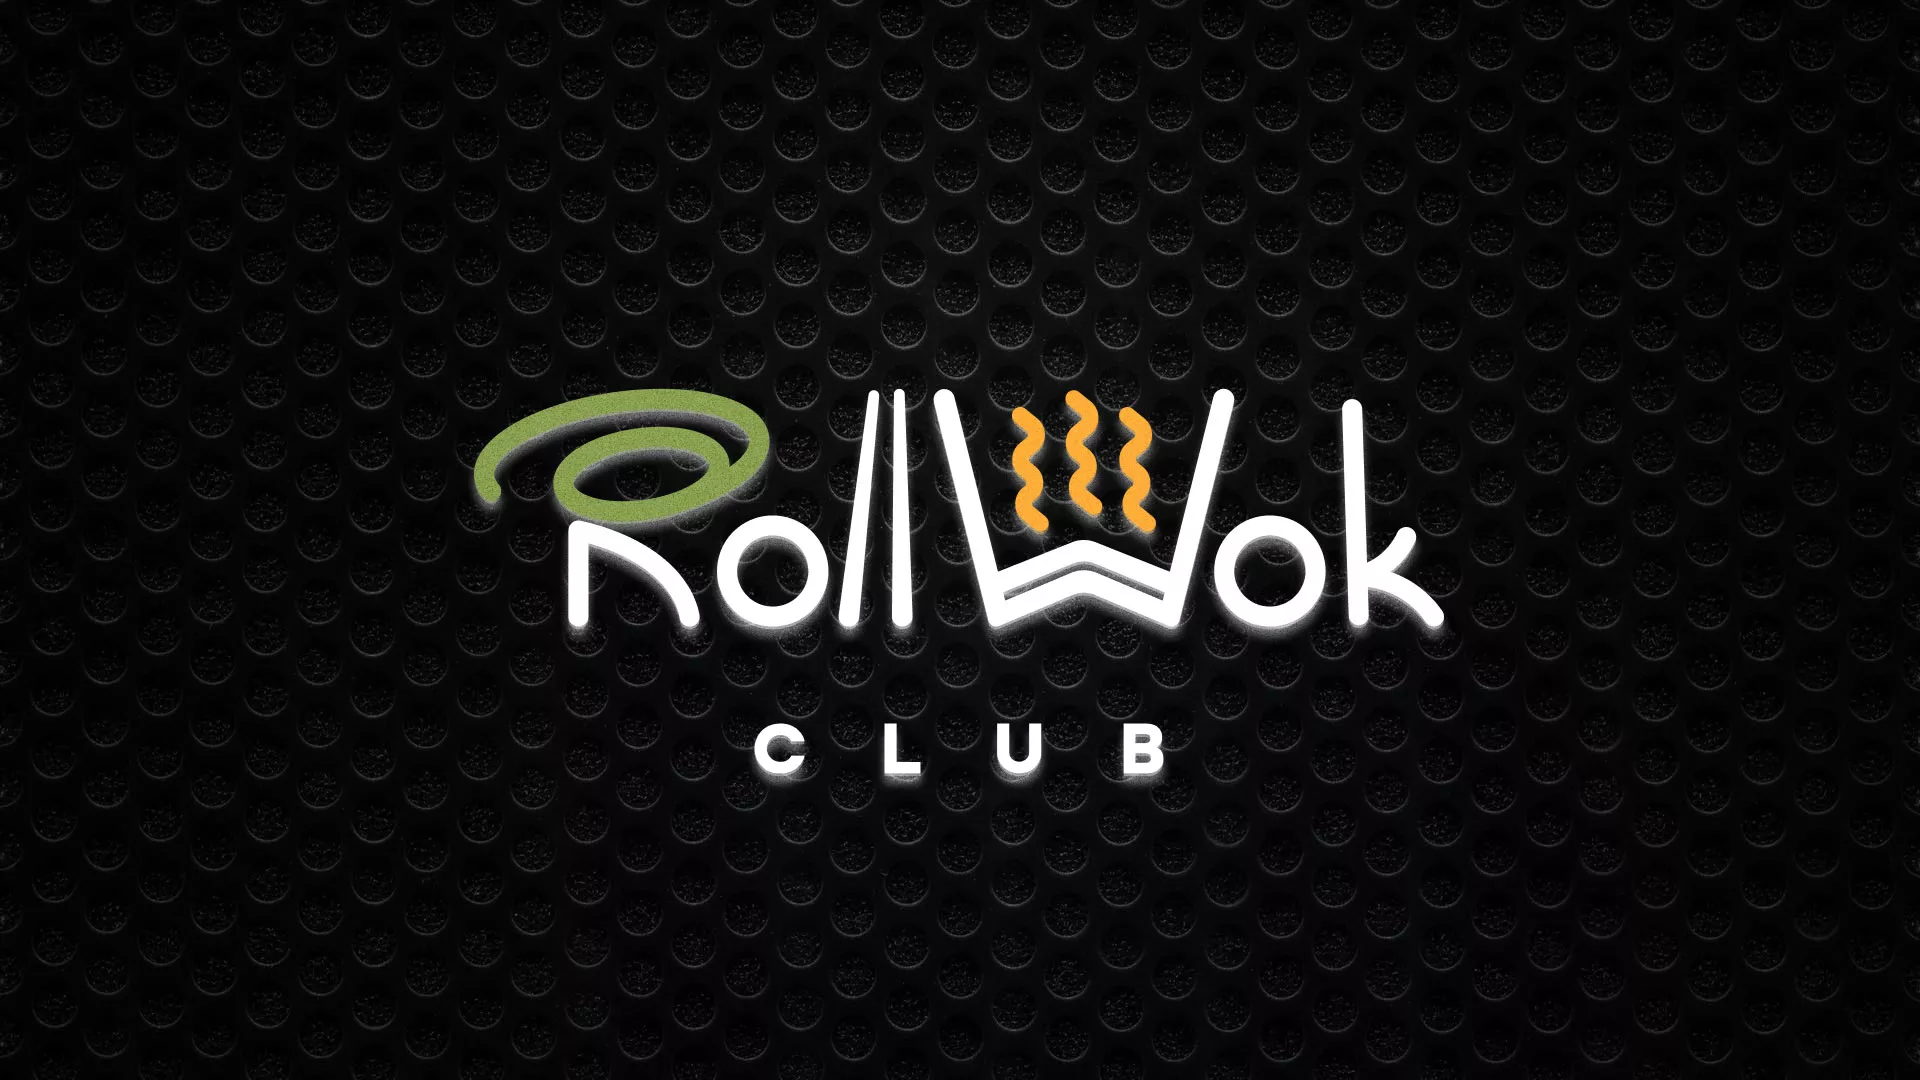 Брендирование торговых точек суши-бара «Roll Wok Club» в Юхнове